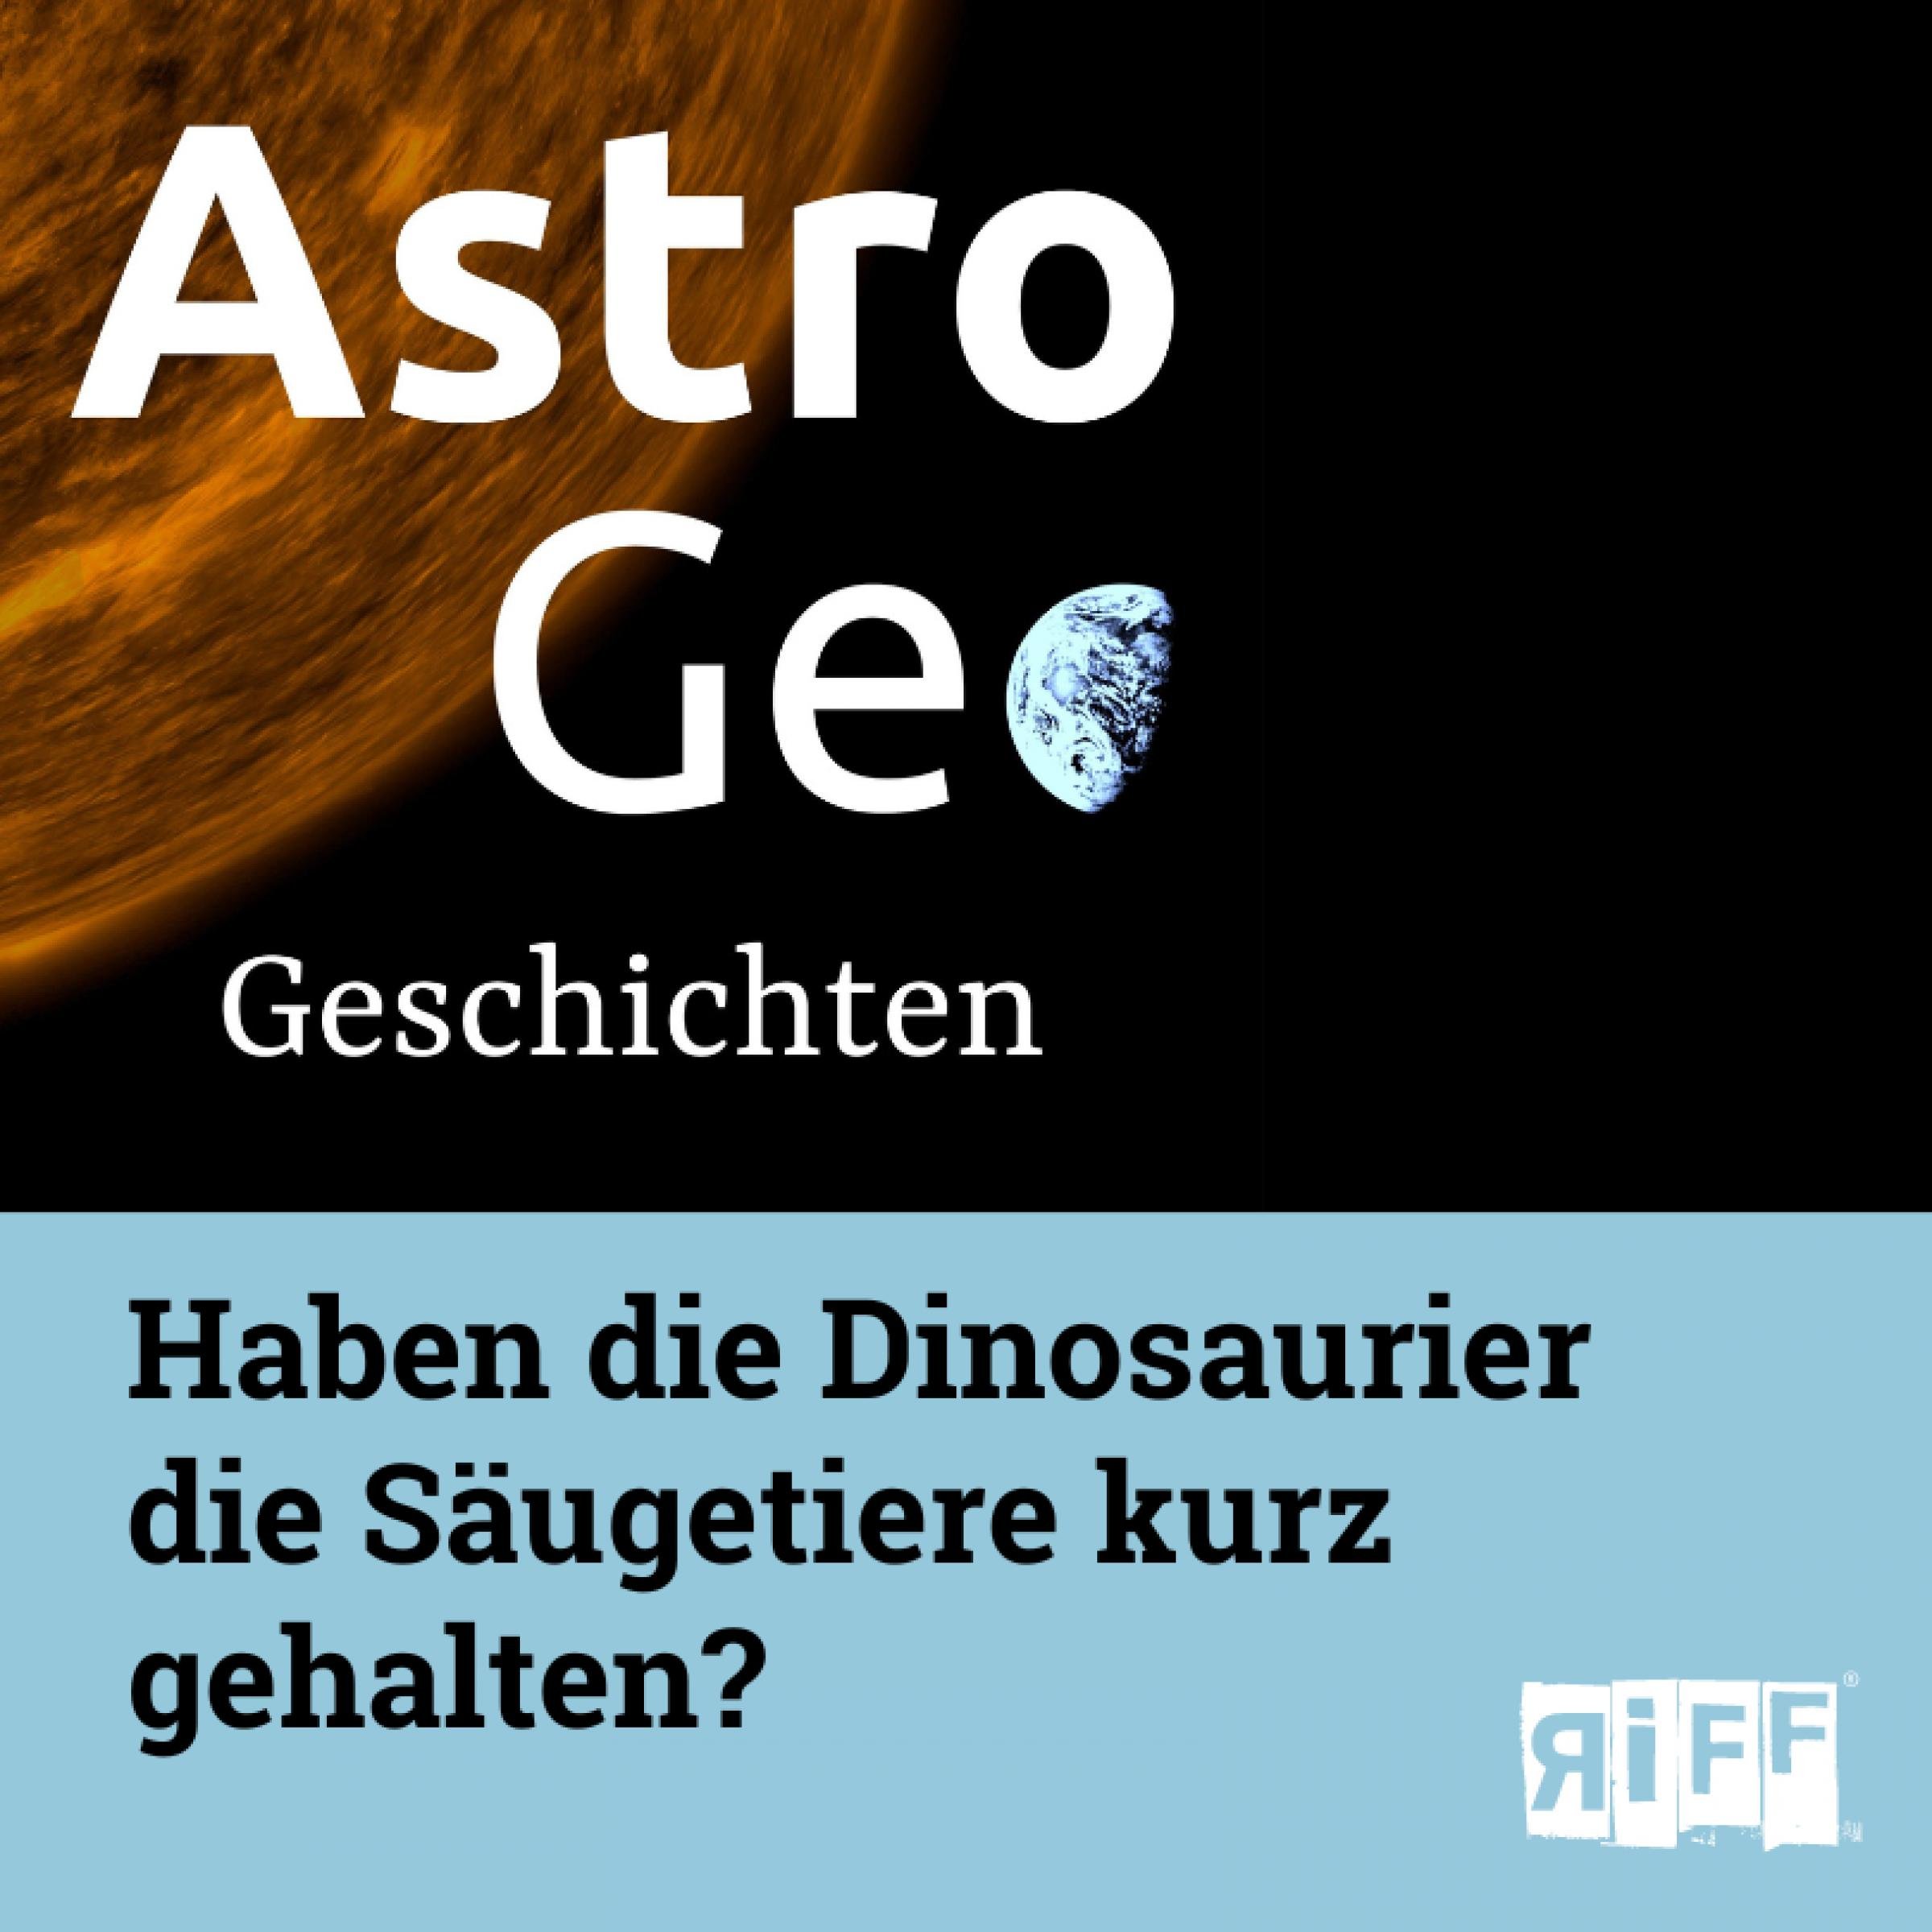 AstroGeo Geschichten: Haben die Dinosaurier die Säugetiere kurz gehalten?